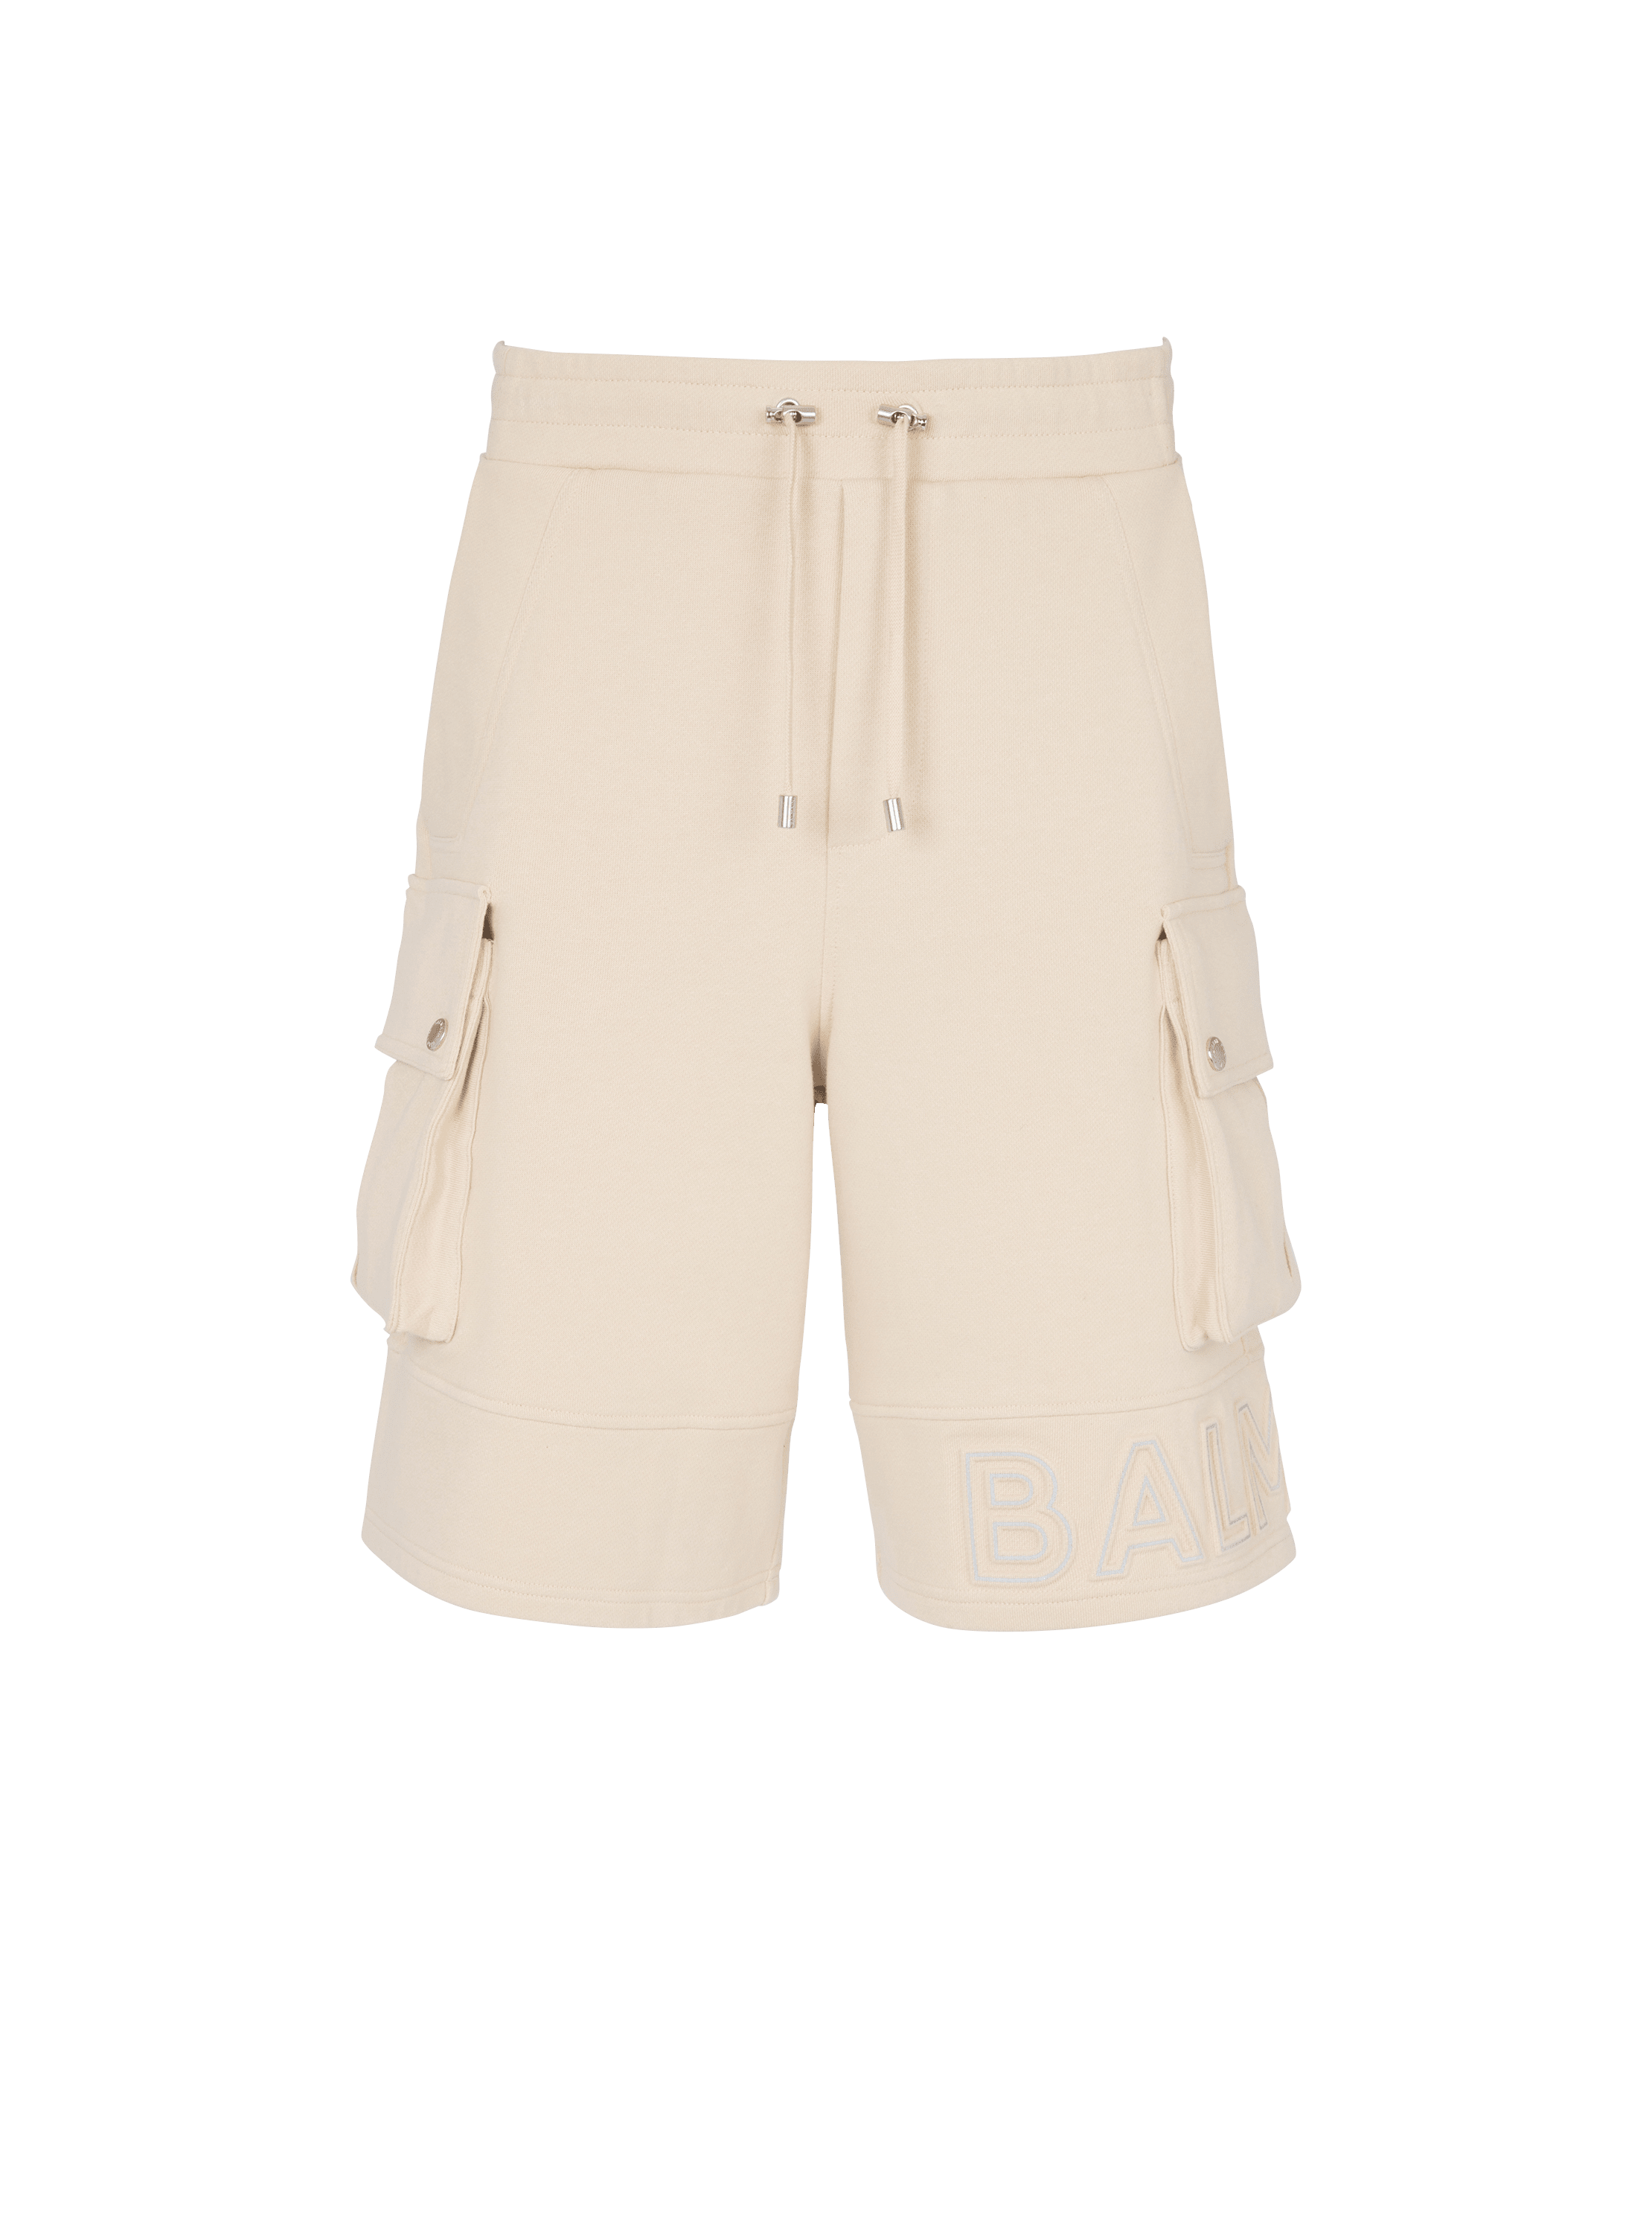 Shorts tipo cargo con logotipo de Balmain reflectante, beis, hi-res